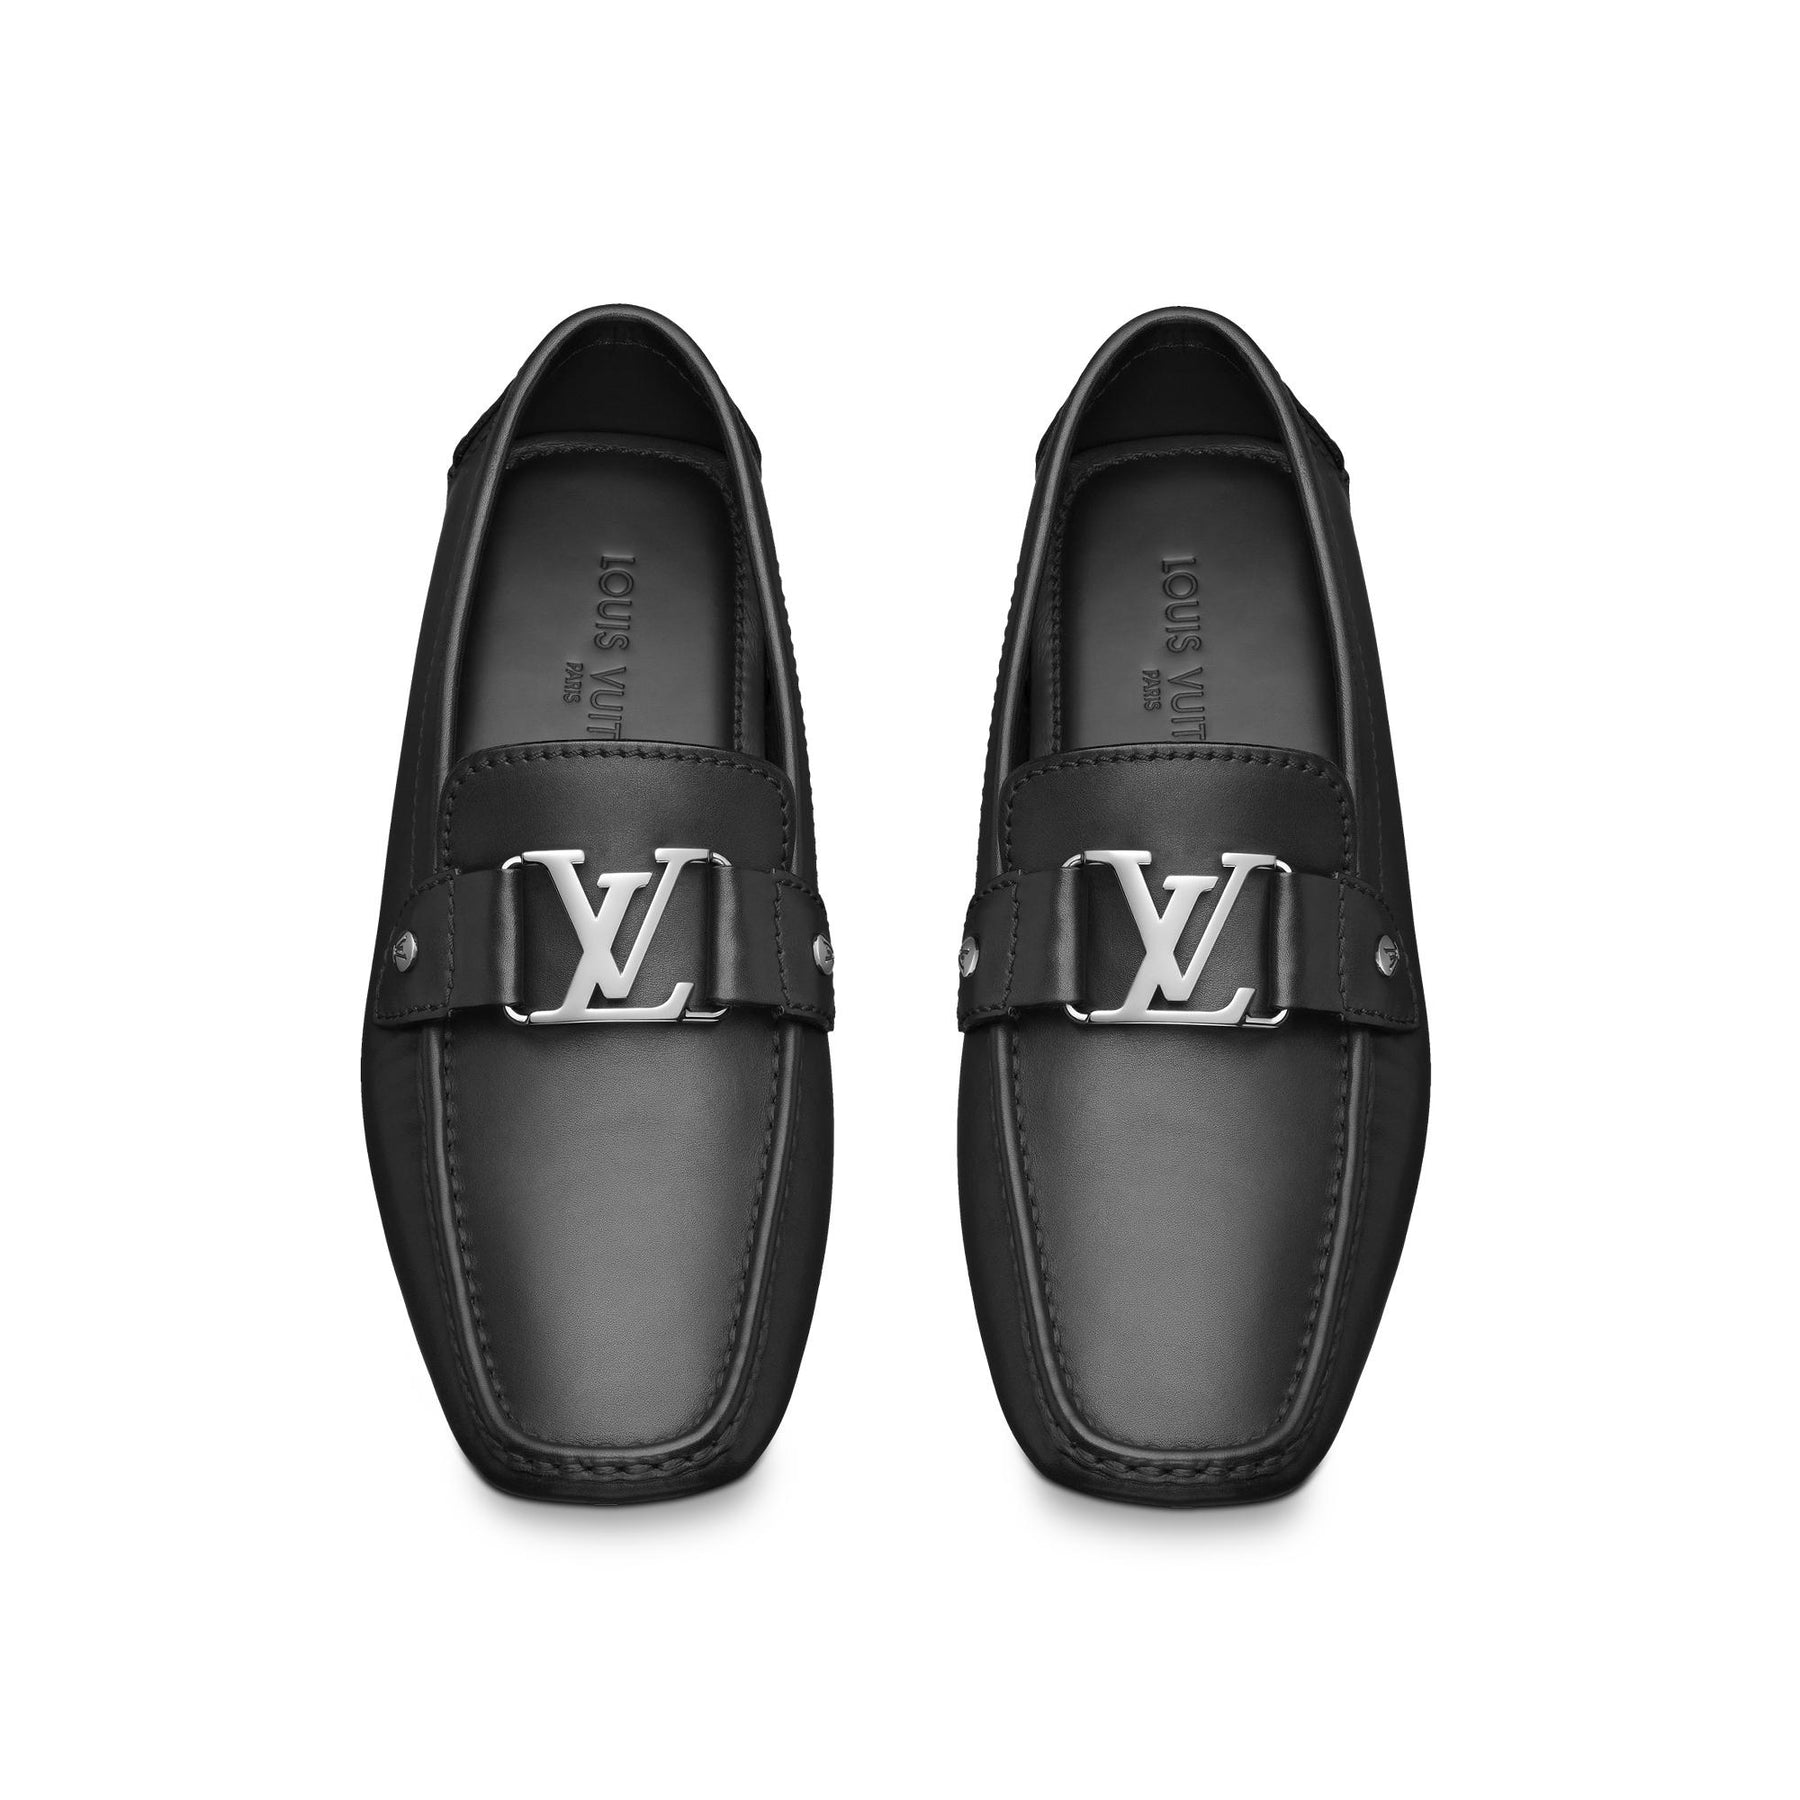 LOUIS VUITTON Black Monte Carlo Moccasins Driving Shoes